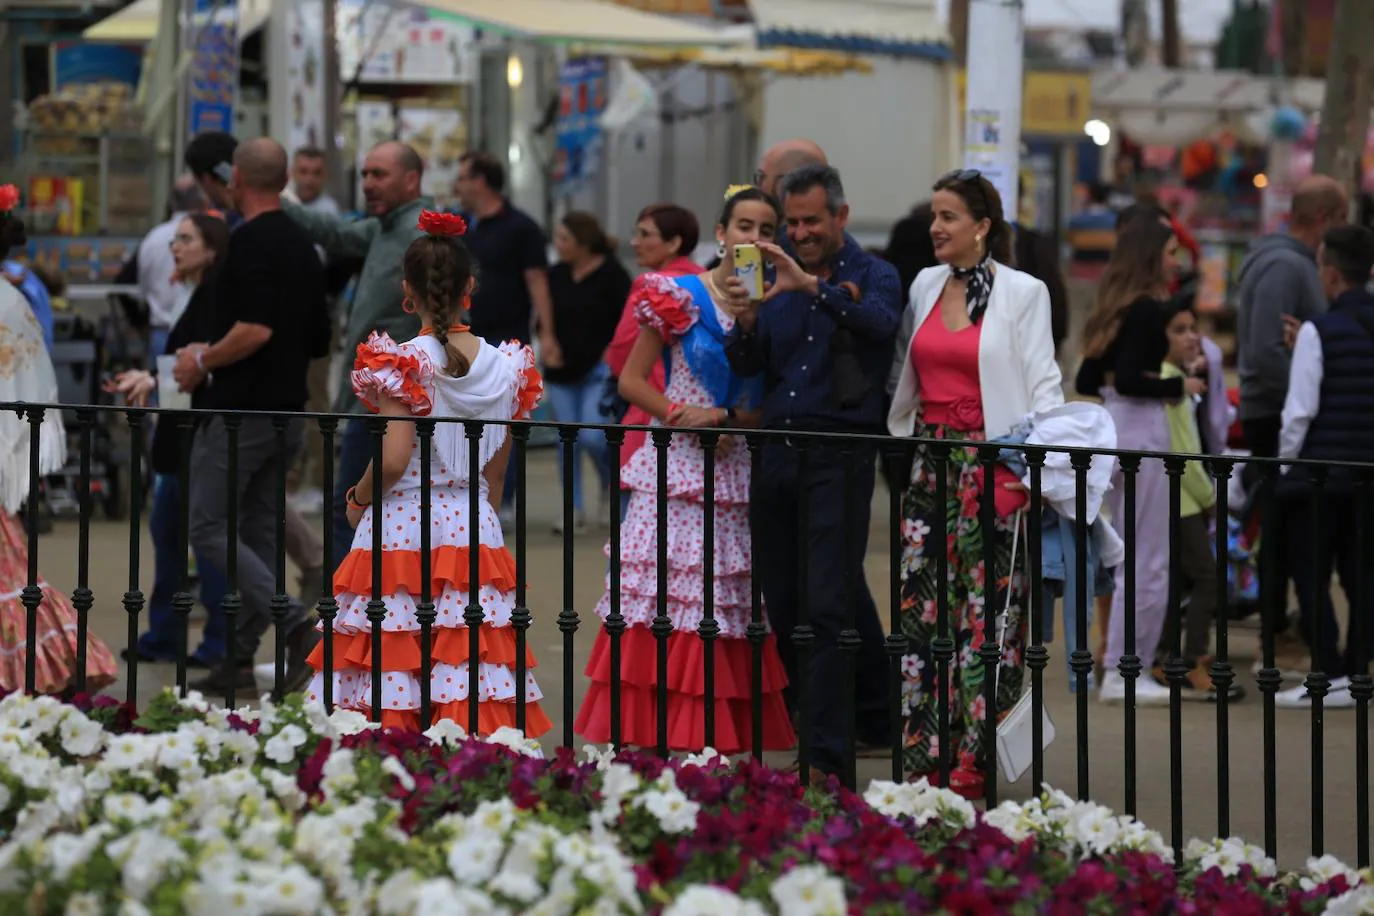 Fotos: Domingo en la Feria de El Puerto